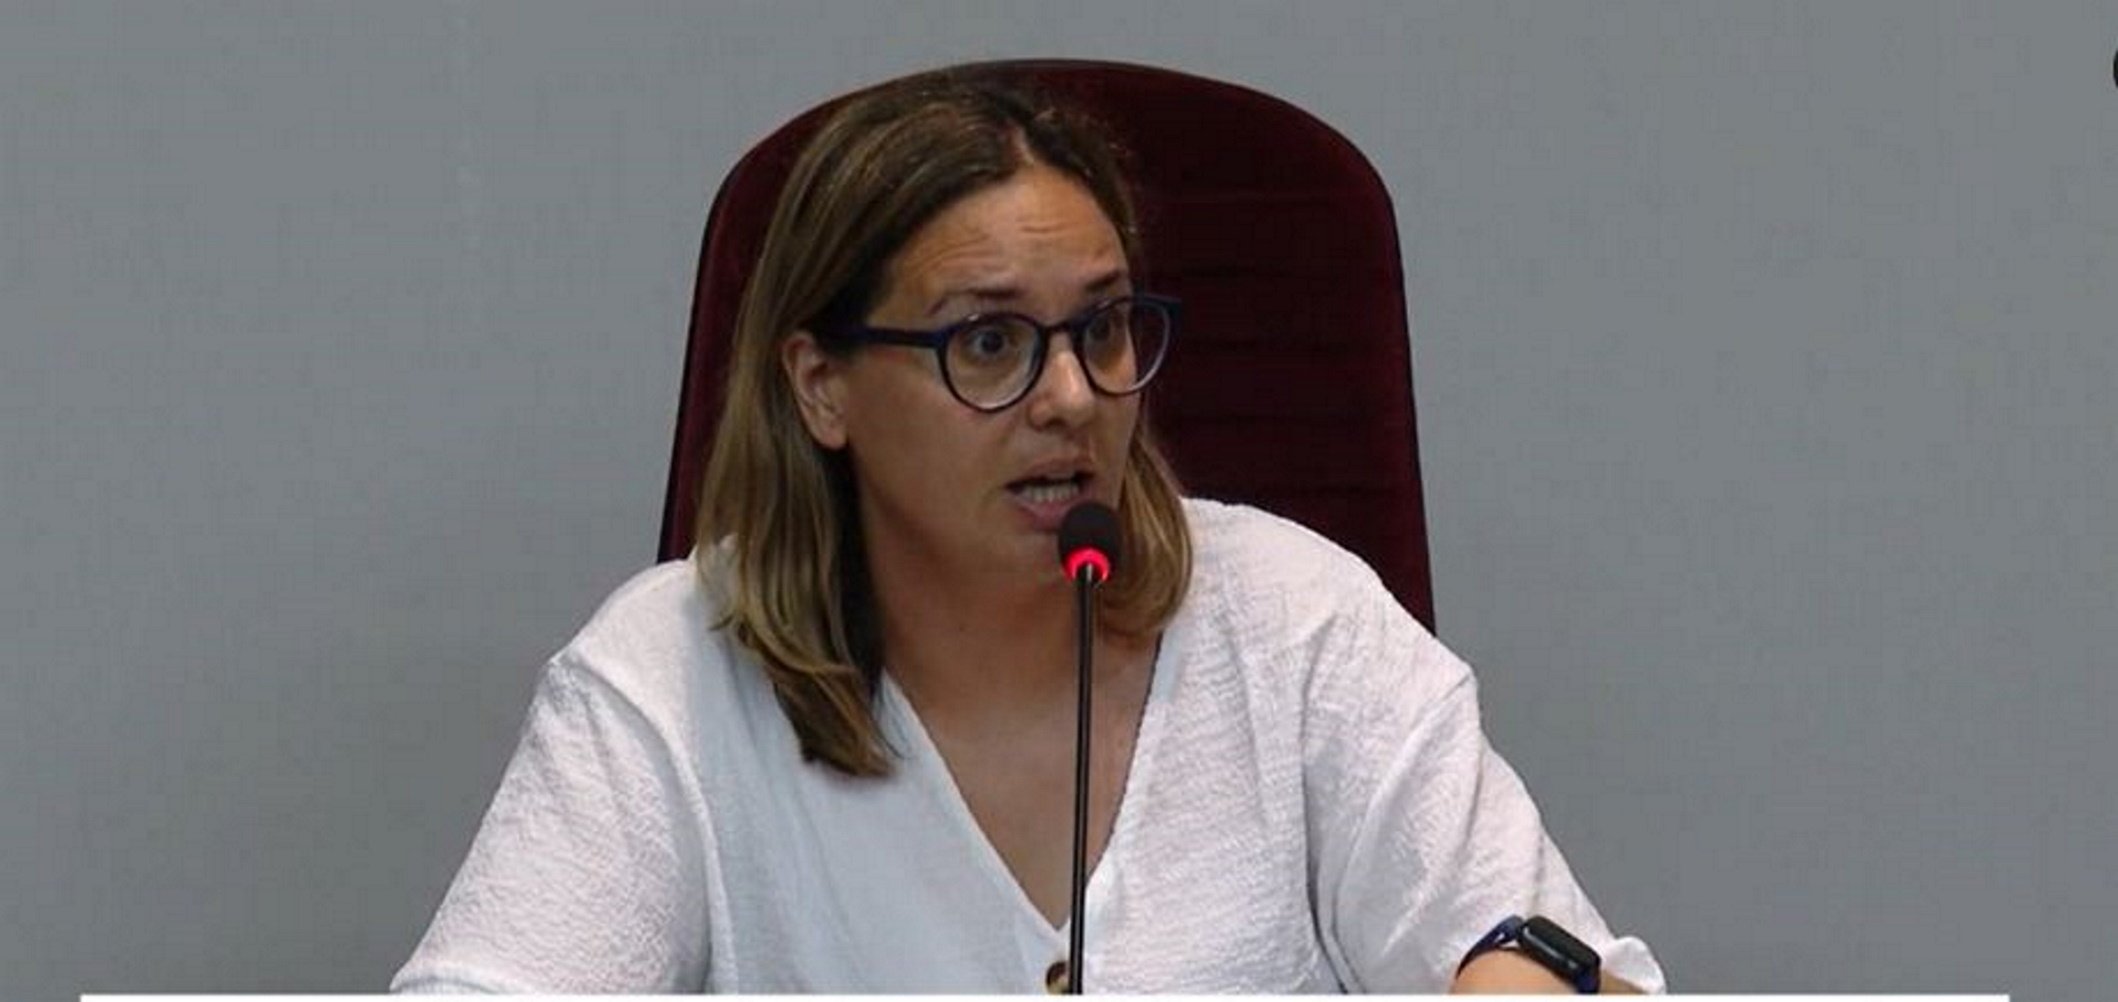 Dimite la concejal de Vilassar de Mar que organizó la gincana infantil 'porno'